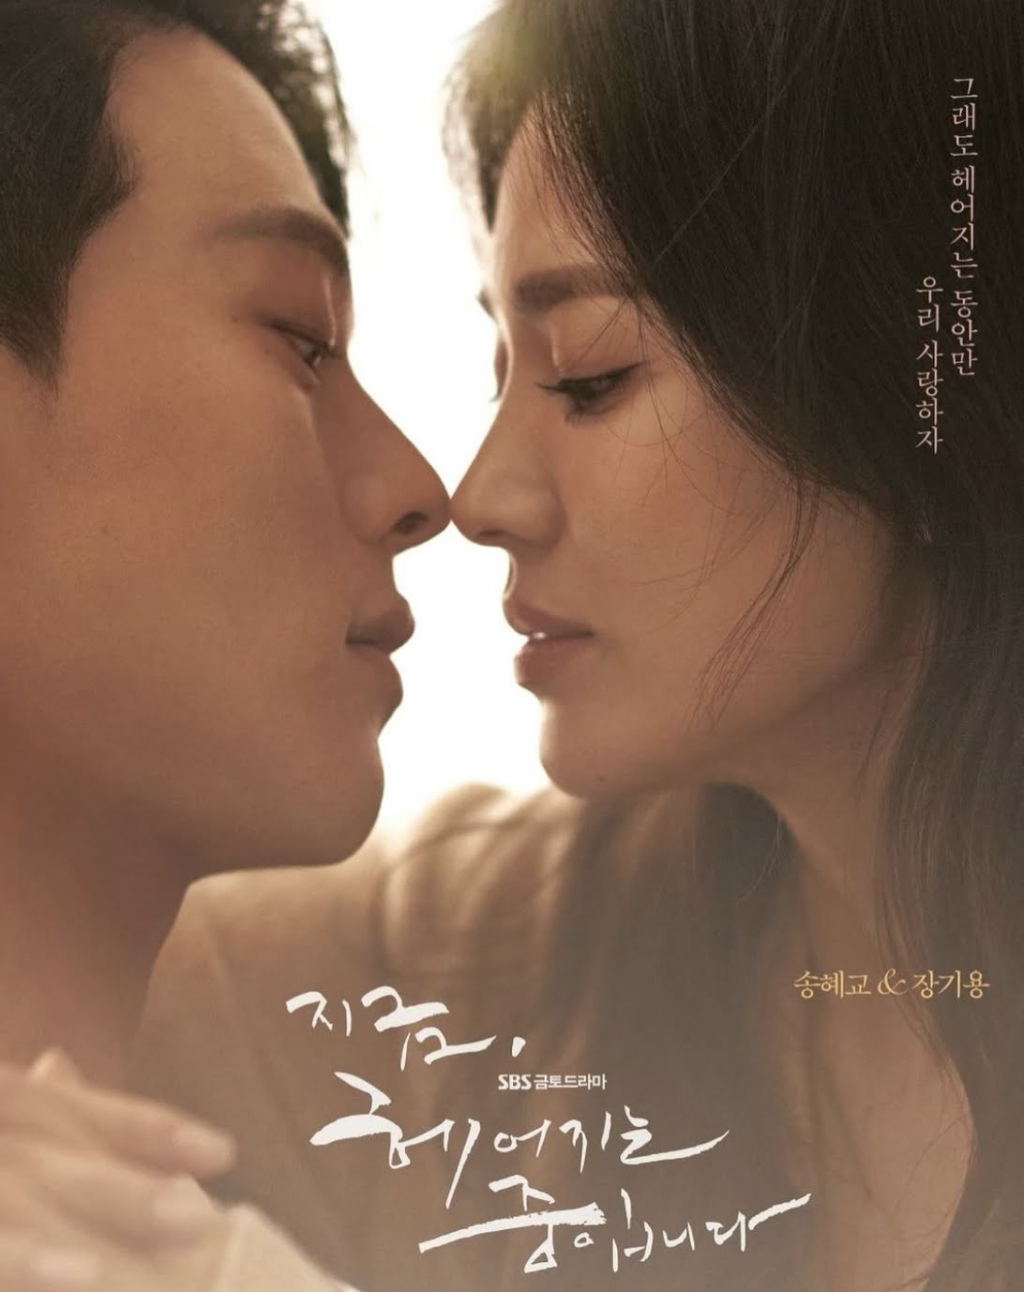 Song Hye Kyo và Jang Ki Yong đẹp đôi bất chấp khoảng cách tuổi tác trong phim mới